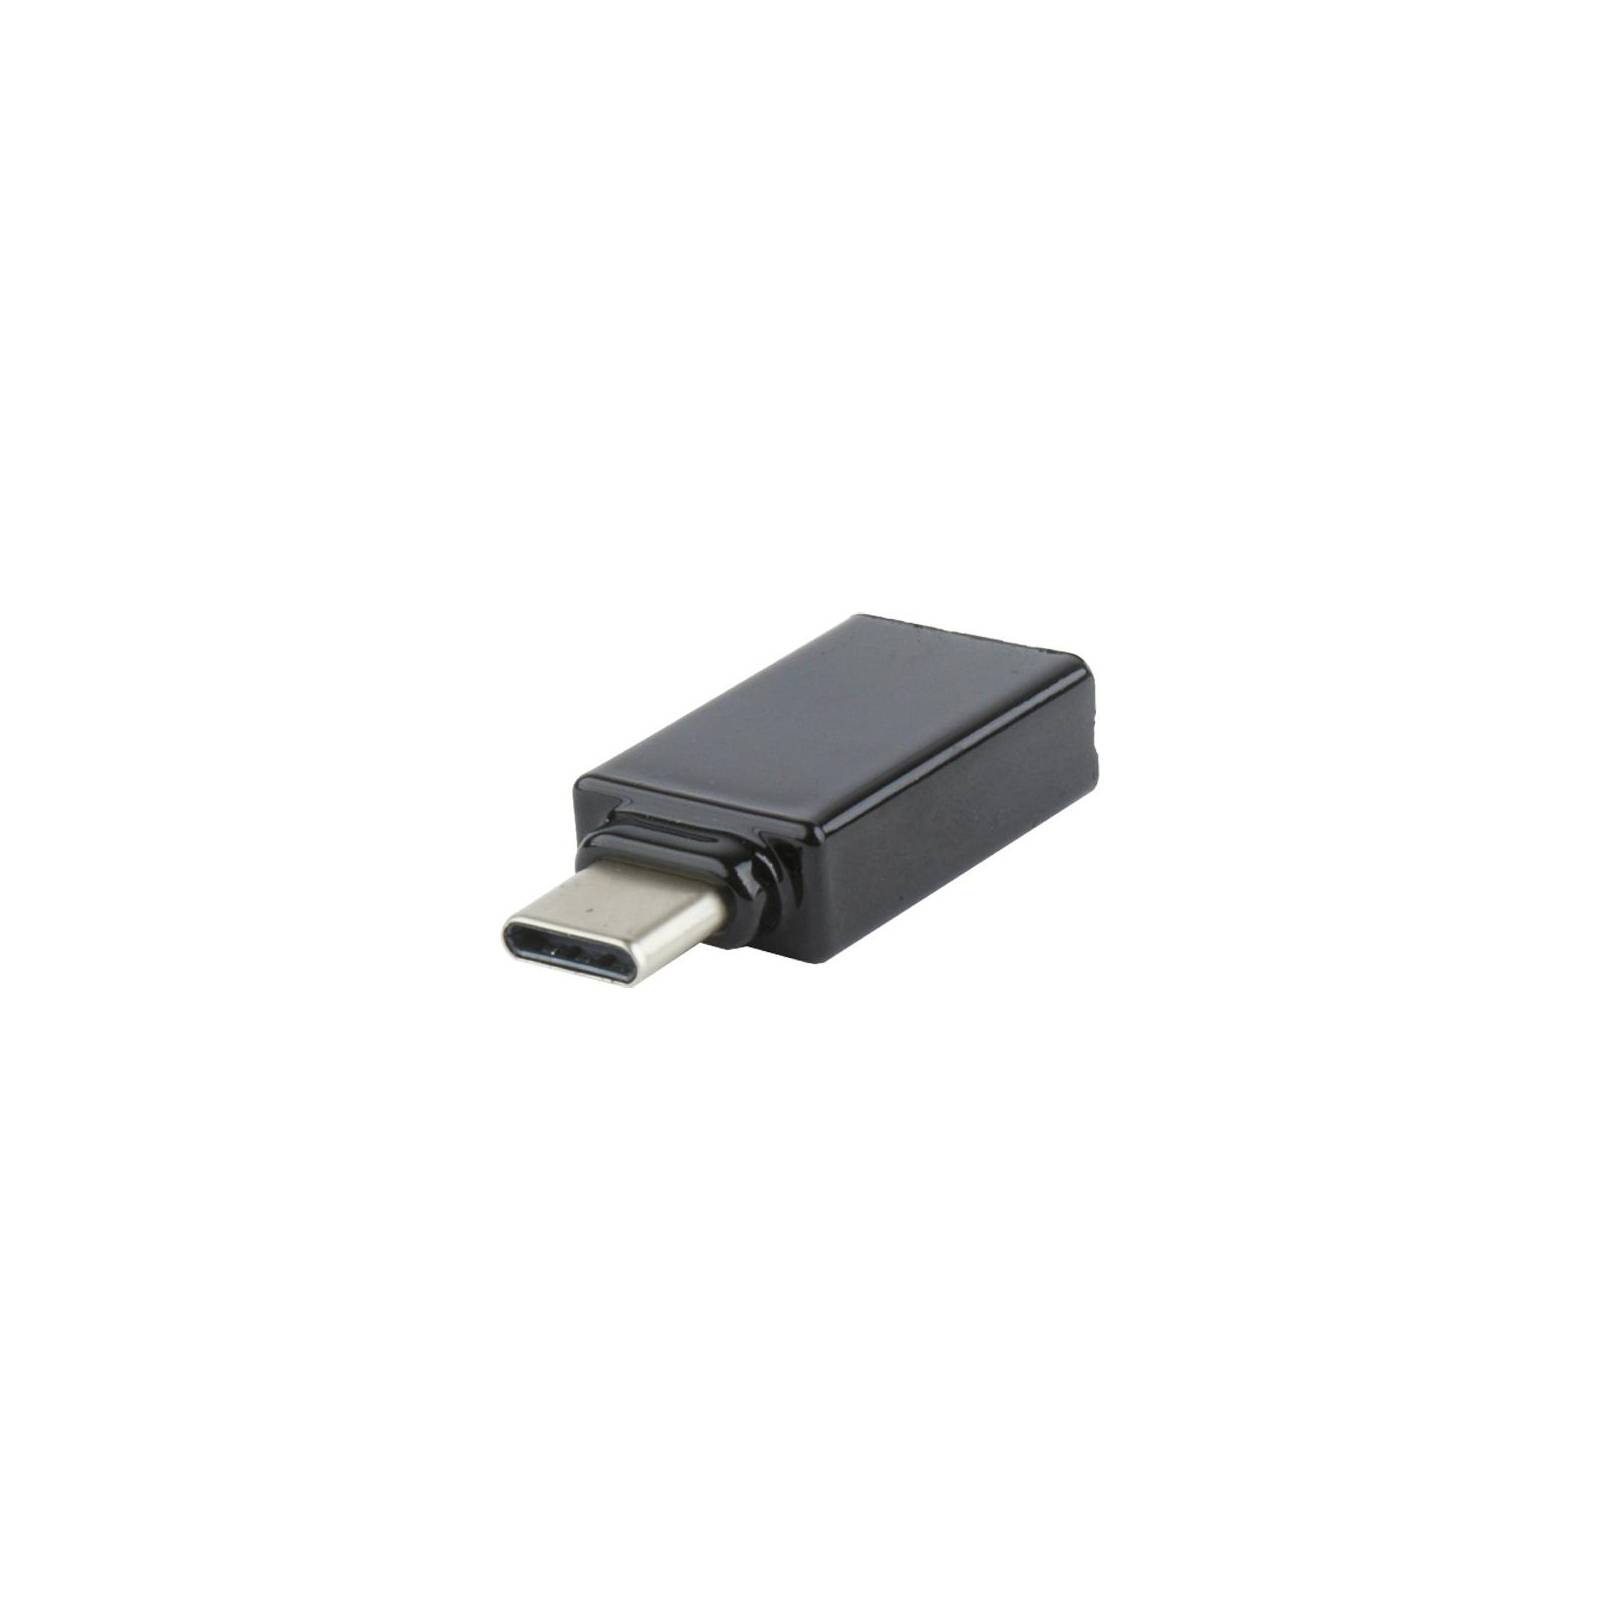 Переходник Type-C to USB AF Cablexpert (A-USB2-CMAF-01) изображение 2